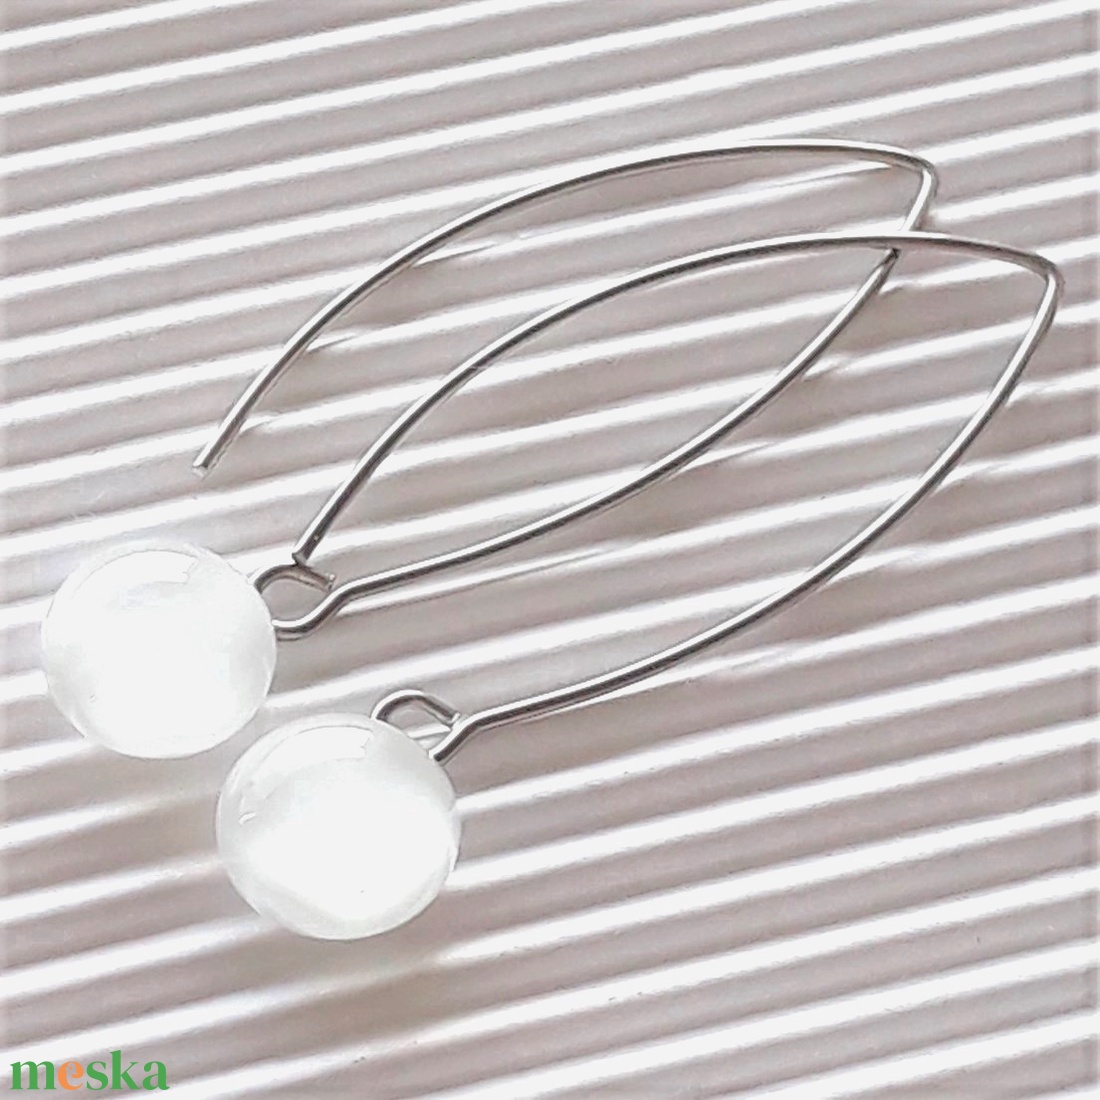 Selymes fehér pötty üveg fülbevaló design, hosszű, orvosi fém akasztón, üvegékszer - ékszer - fülbevaló - lógós kerek fülbevaló - Meska.hu